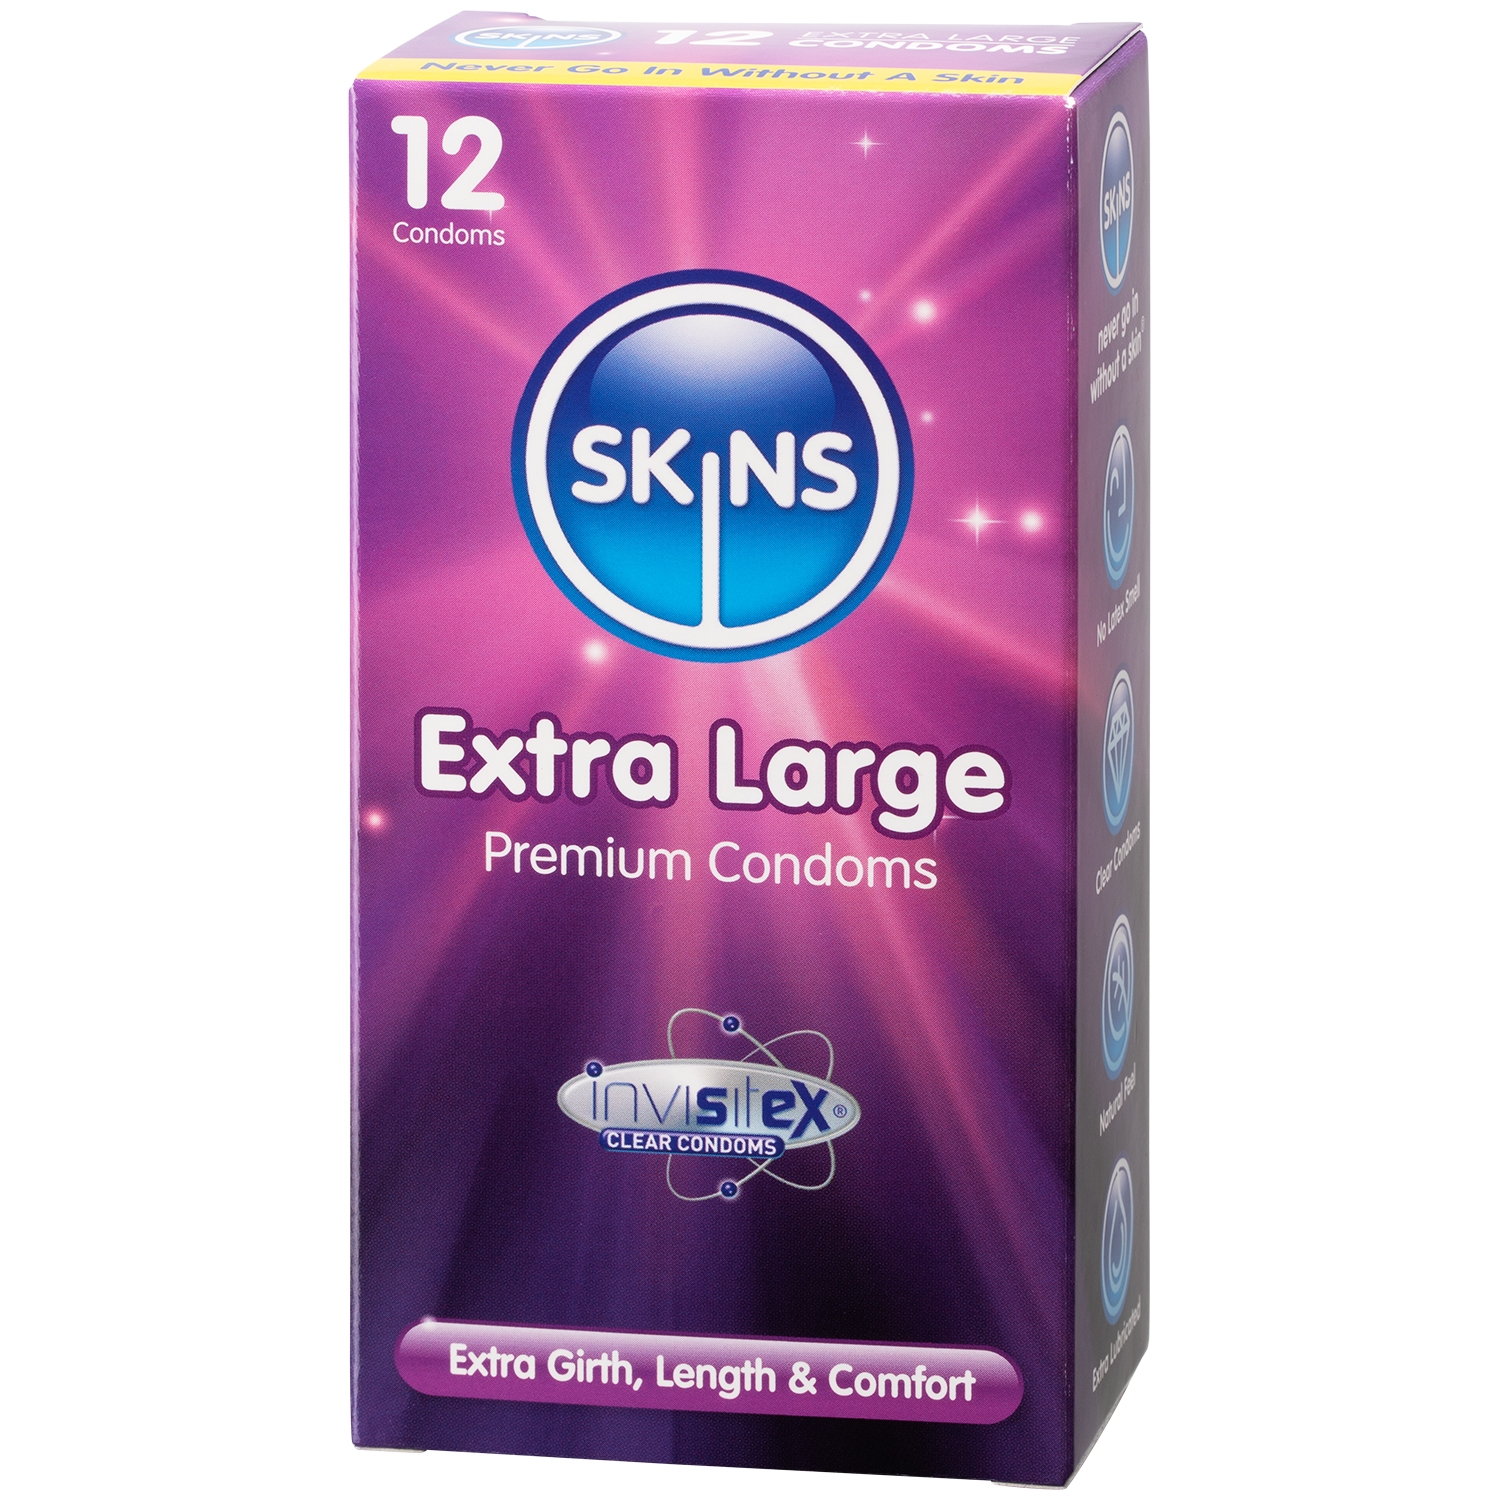 Skins Extra Large Kondomer 12-pack - Klar | Tillbehör//Kondomer//Män//Bättre Sex//Par kondomer//Stora Kondomer//Vanliga Kondomer//Tunna Kondomer//Skins | Intimast